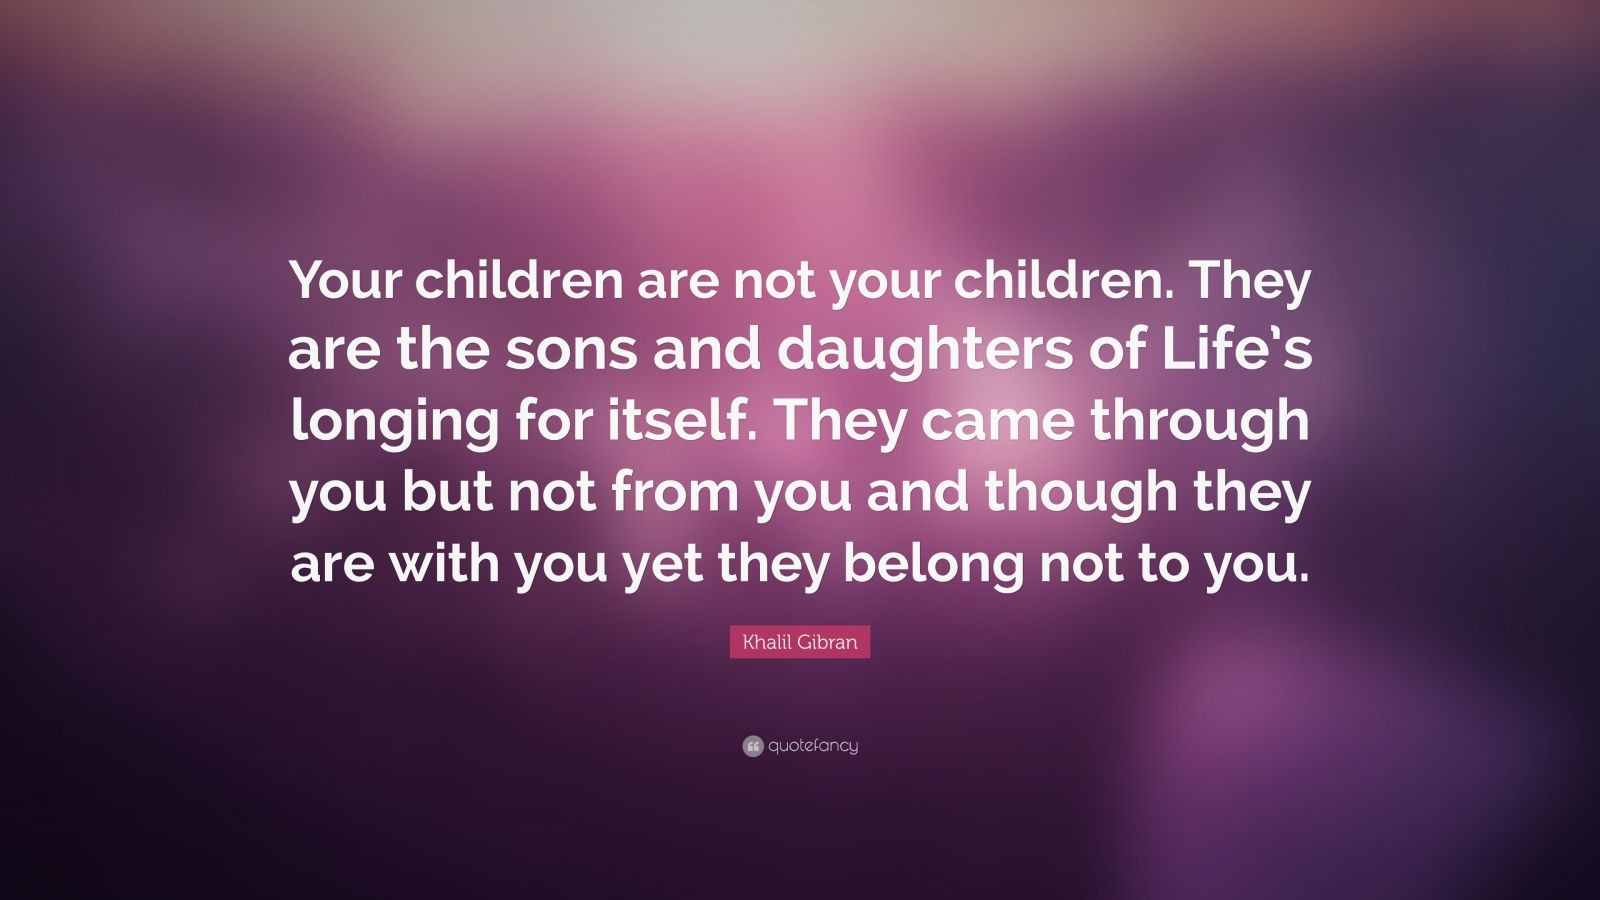 Khalil Gibran Quote On Children
 Khalil Gibran Quote “Your children are not your children